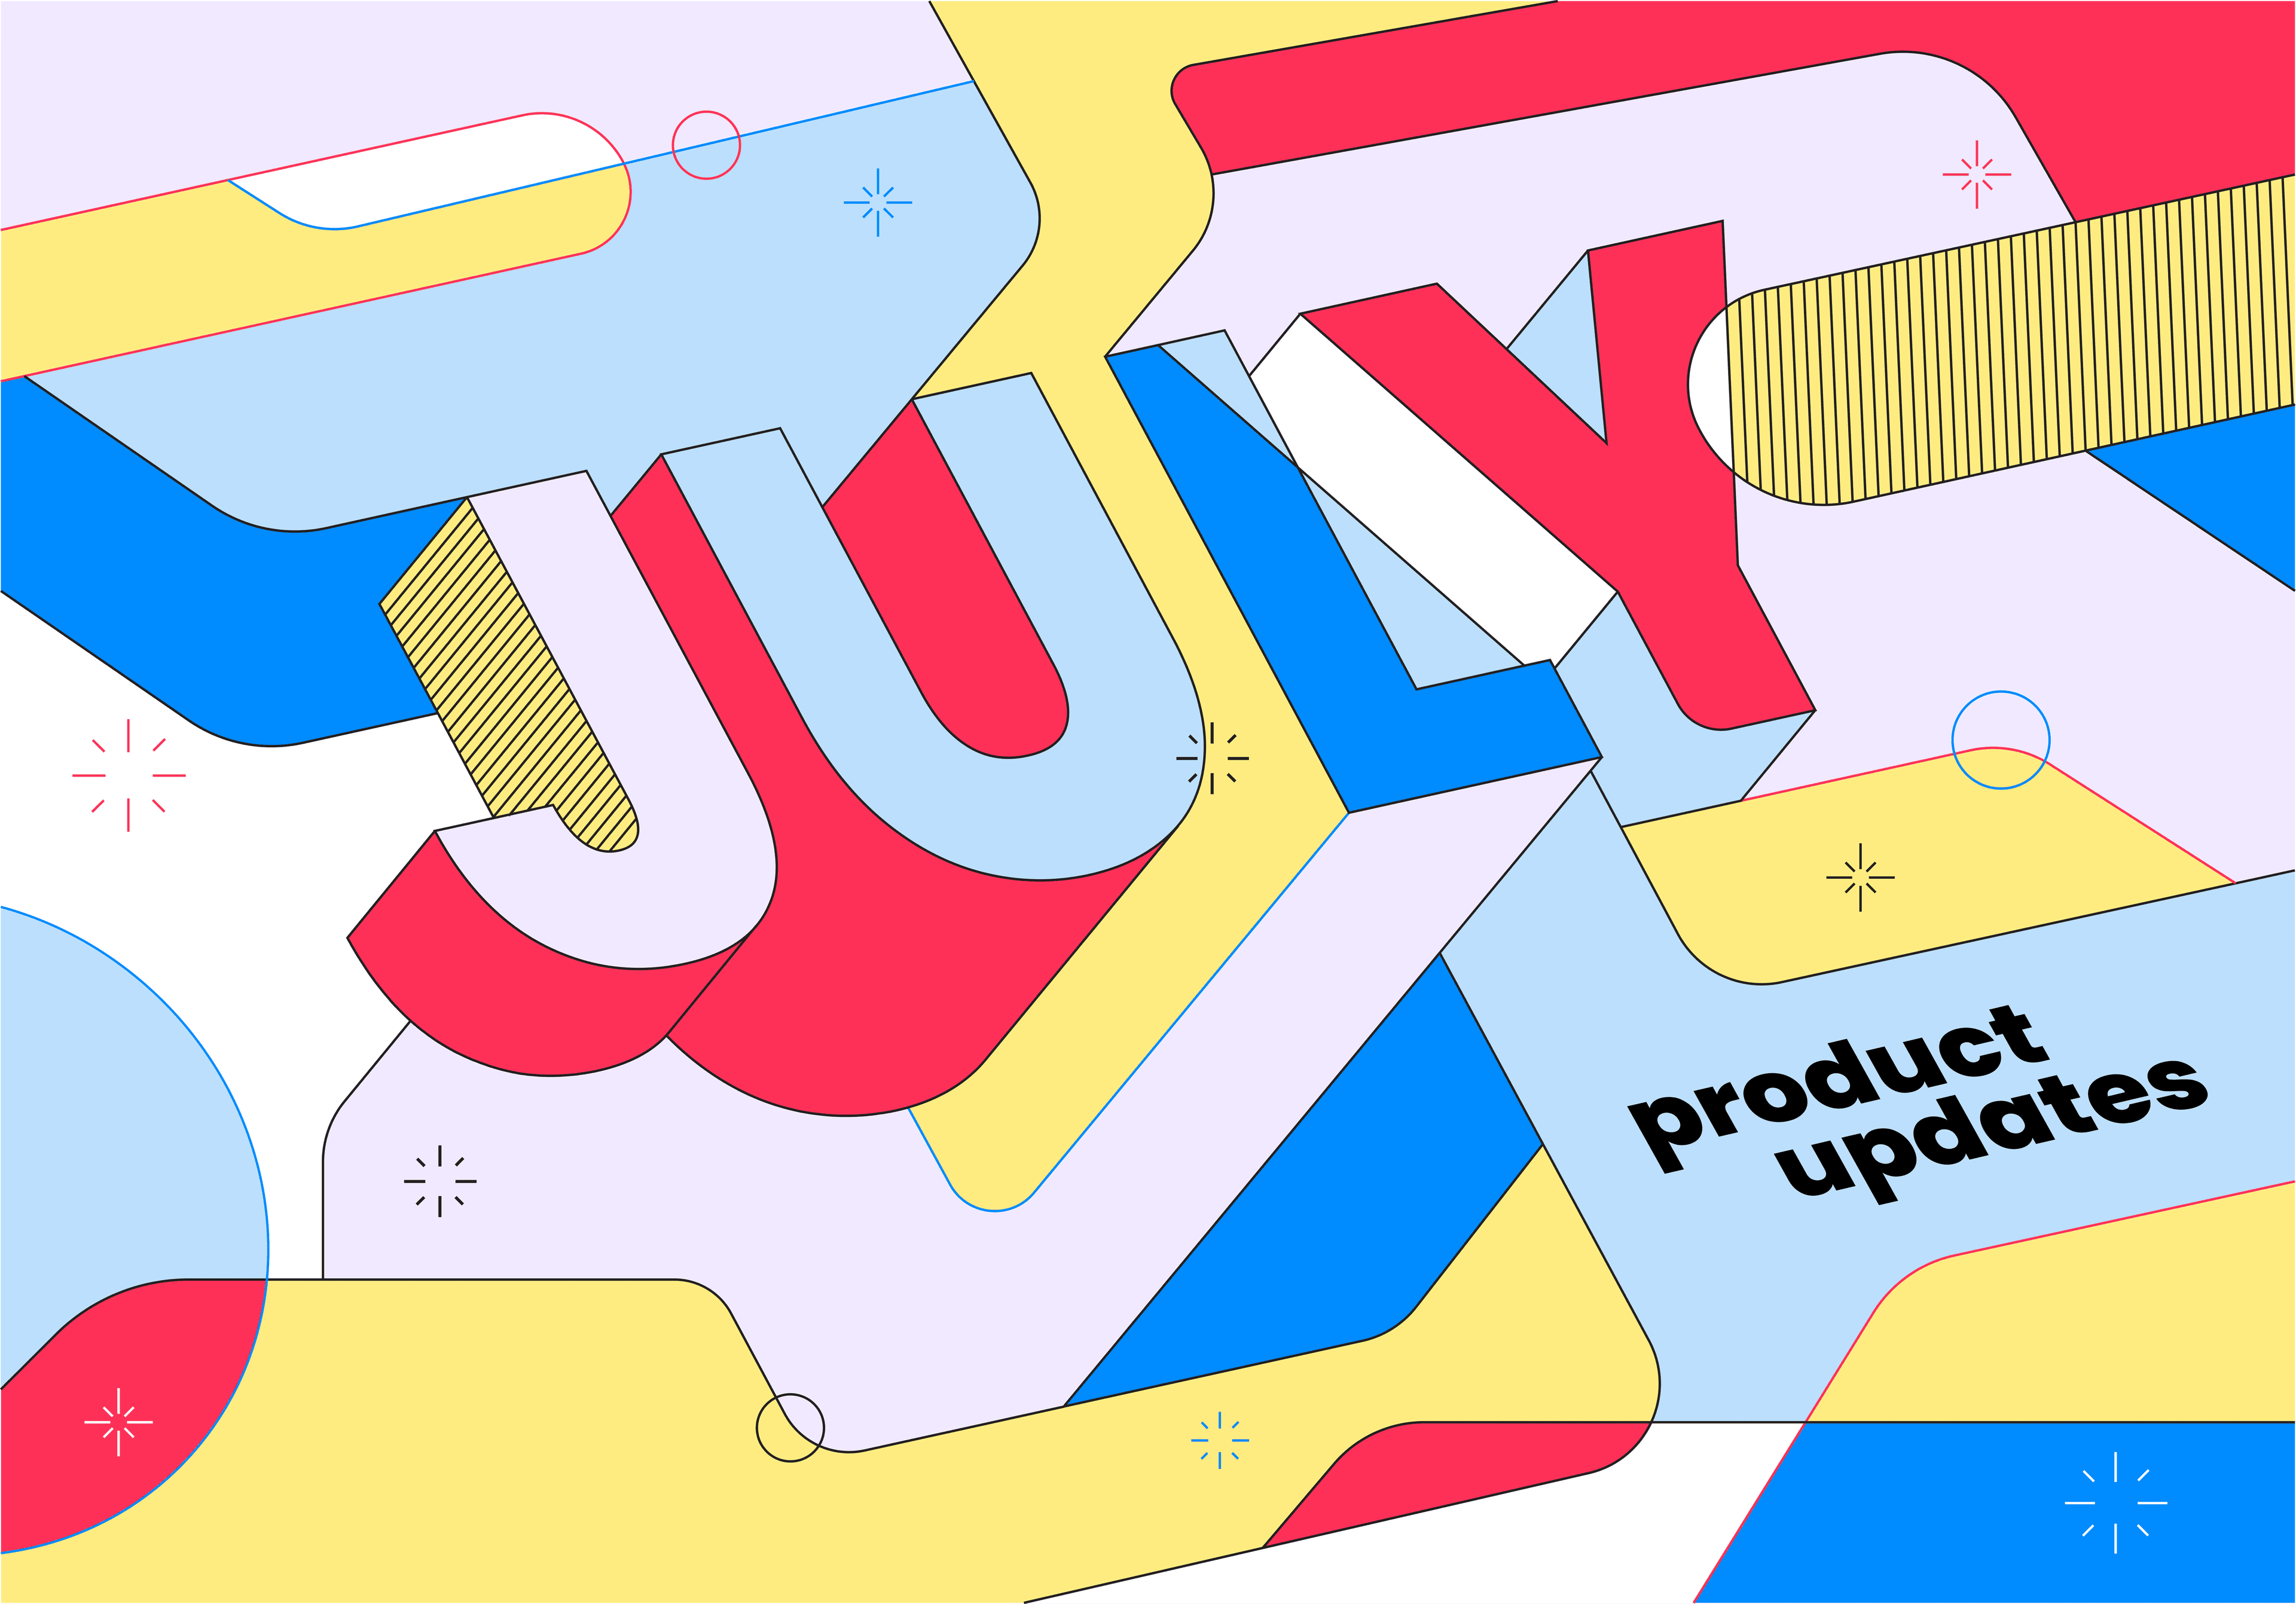 July updates